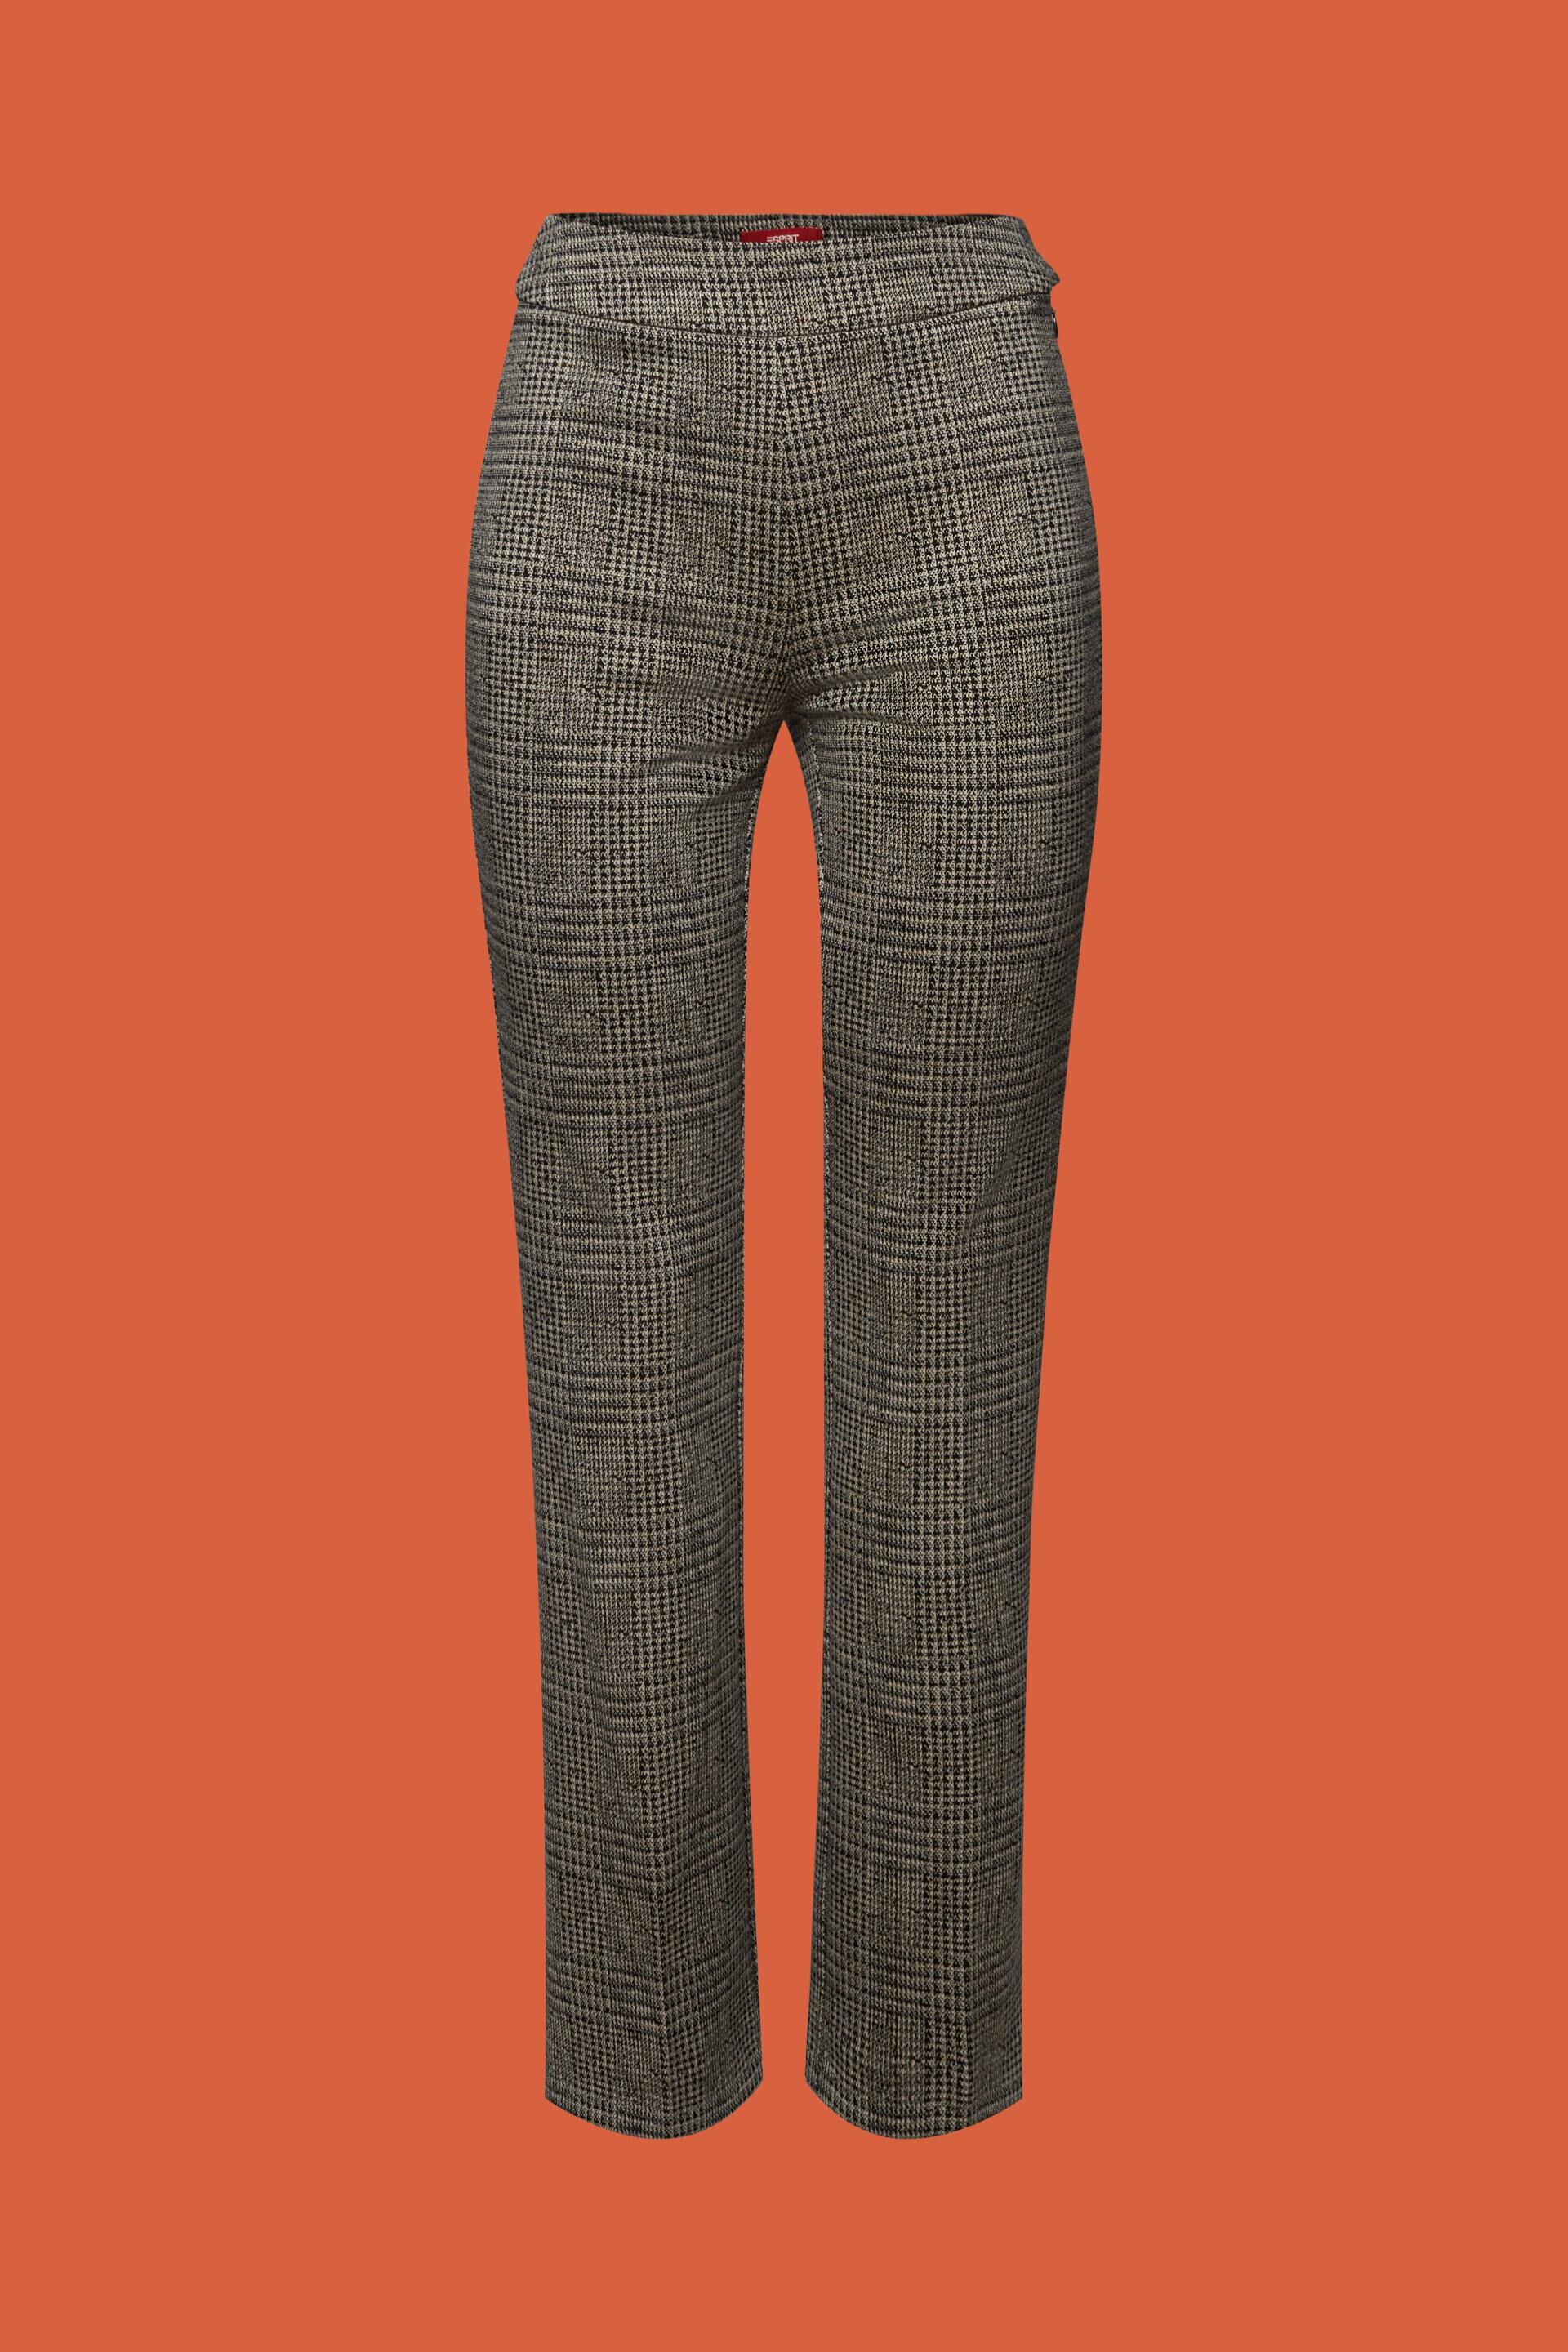 Patterned Slip-On Pants at our shop - ESPRIT online